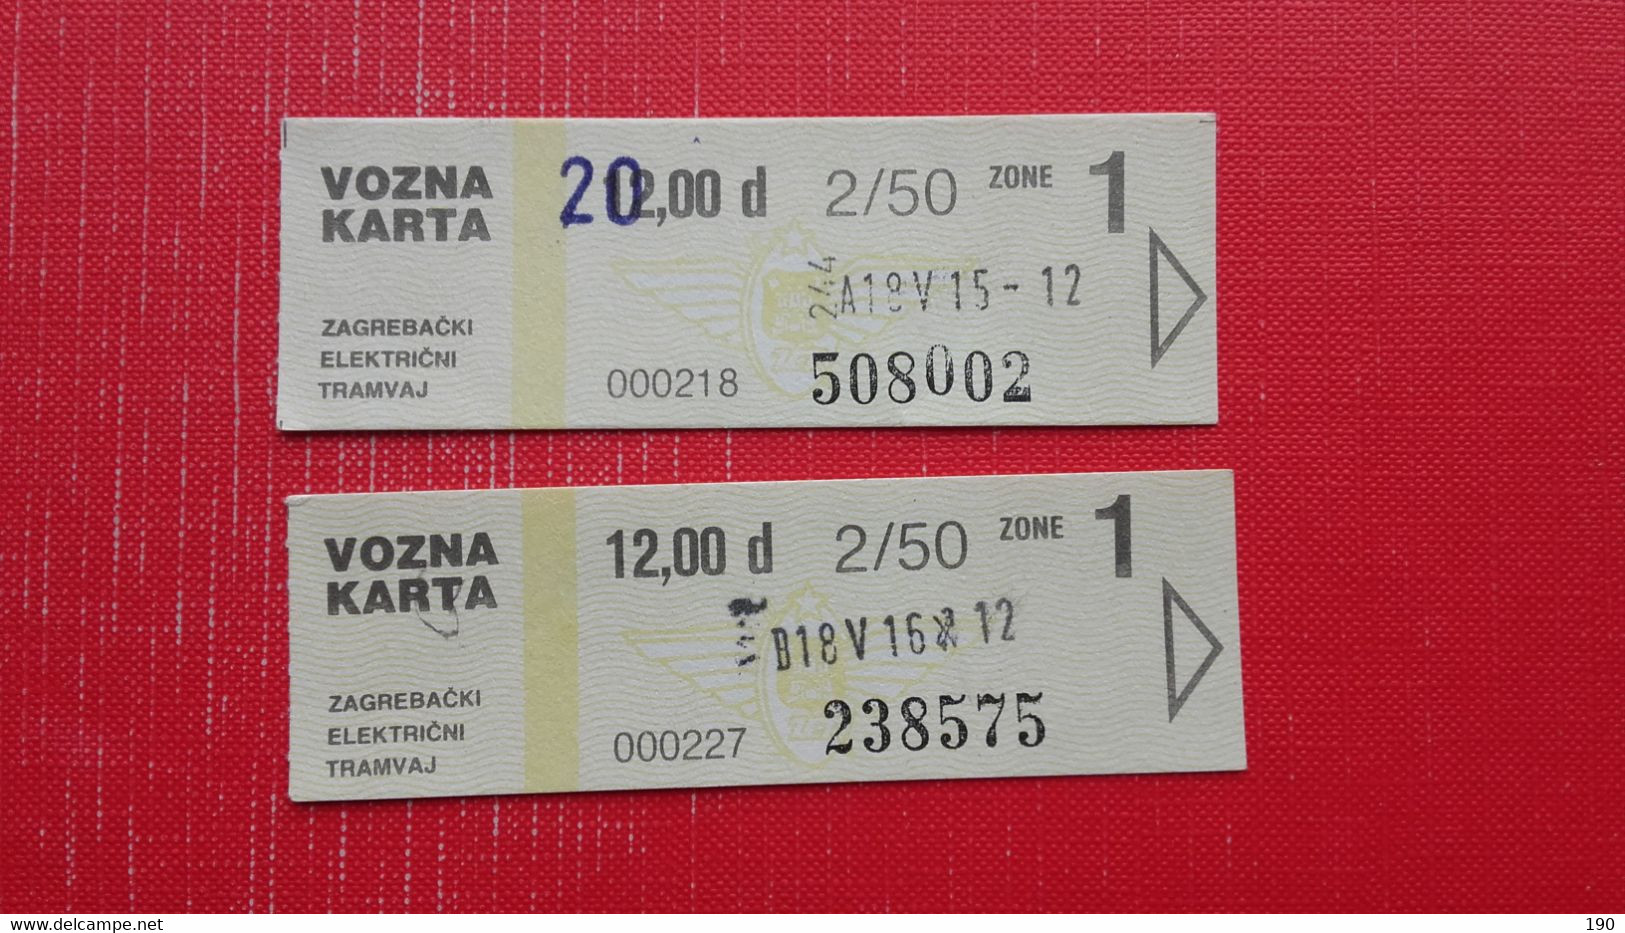 2 Ticket.Zagrebacki Elektricni Tramvaj.Vozna Karta - Europe